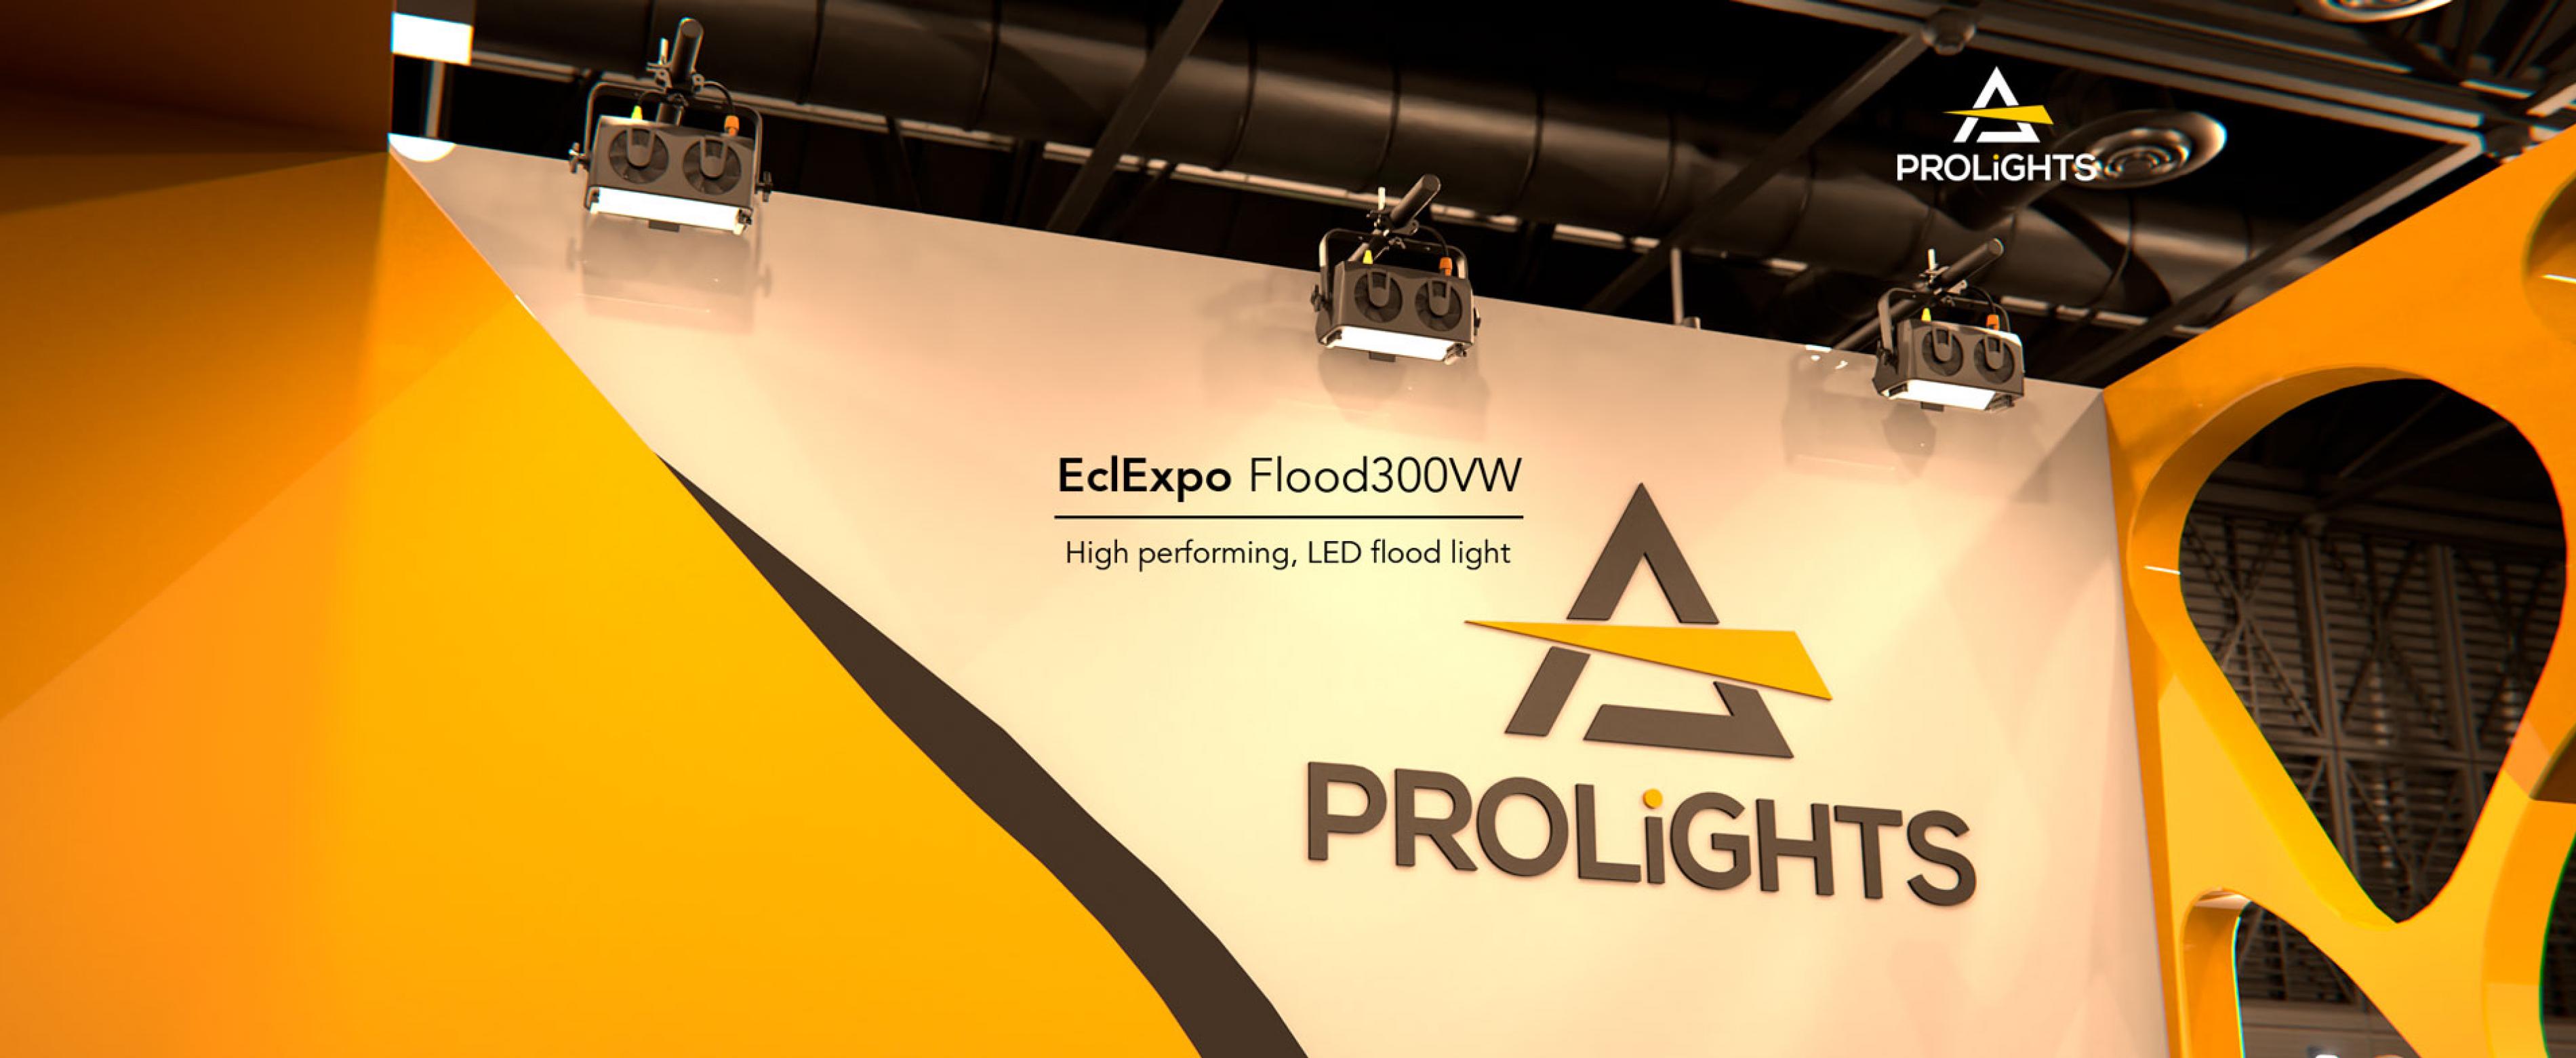 ECL Explo Flood300VW